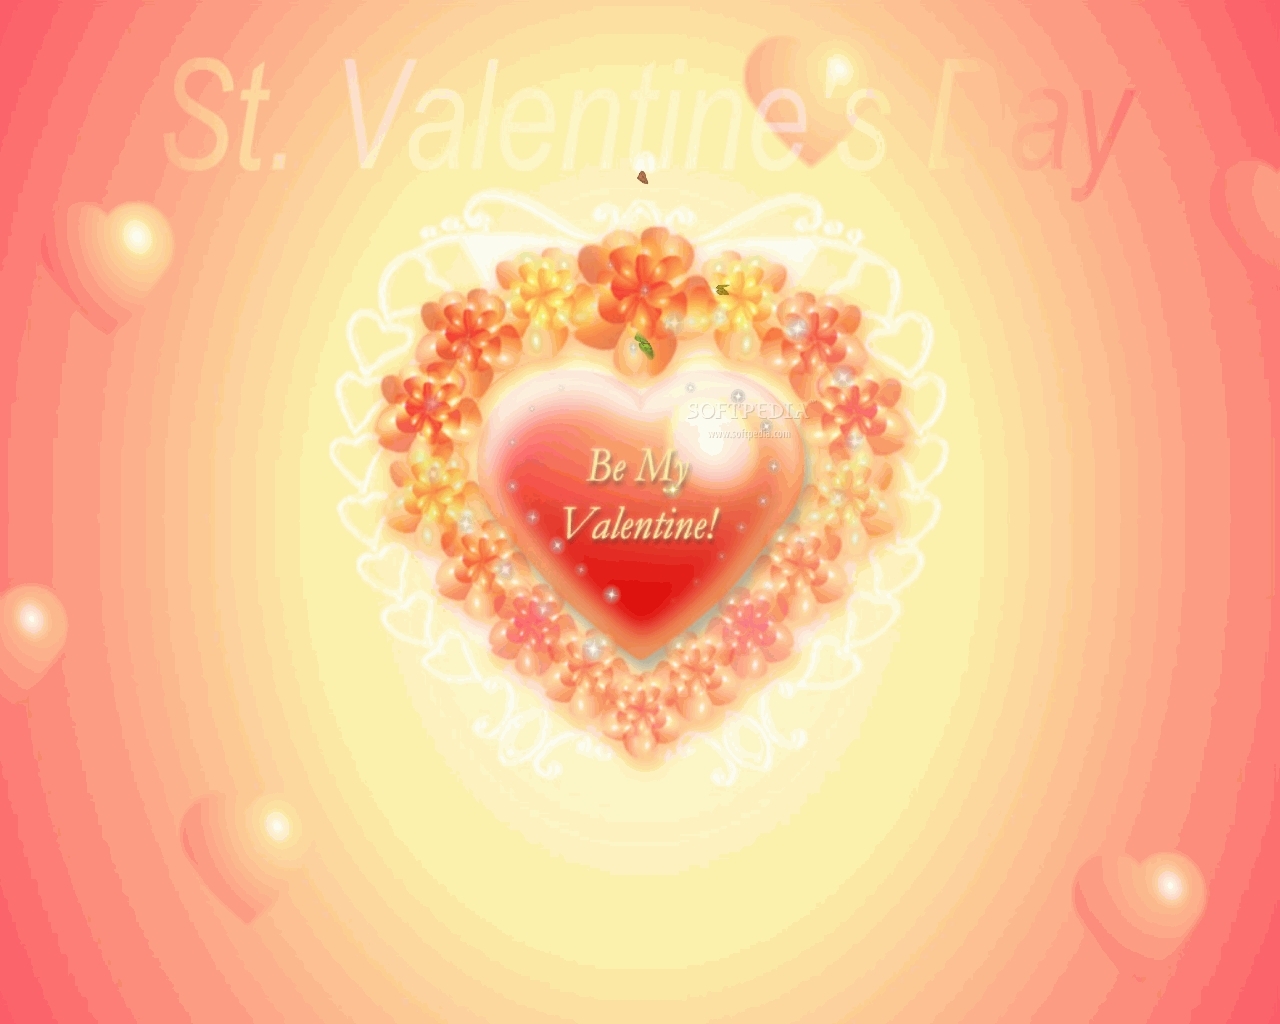 diendanbaclieu-9679-valentine-s-day-valentines-day-4060087-1280-1024.jpg